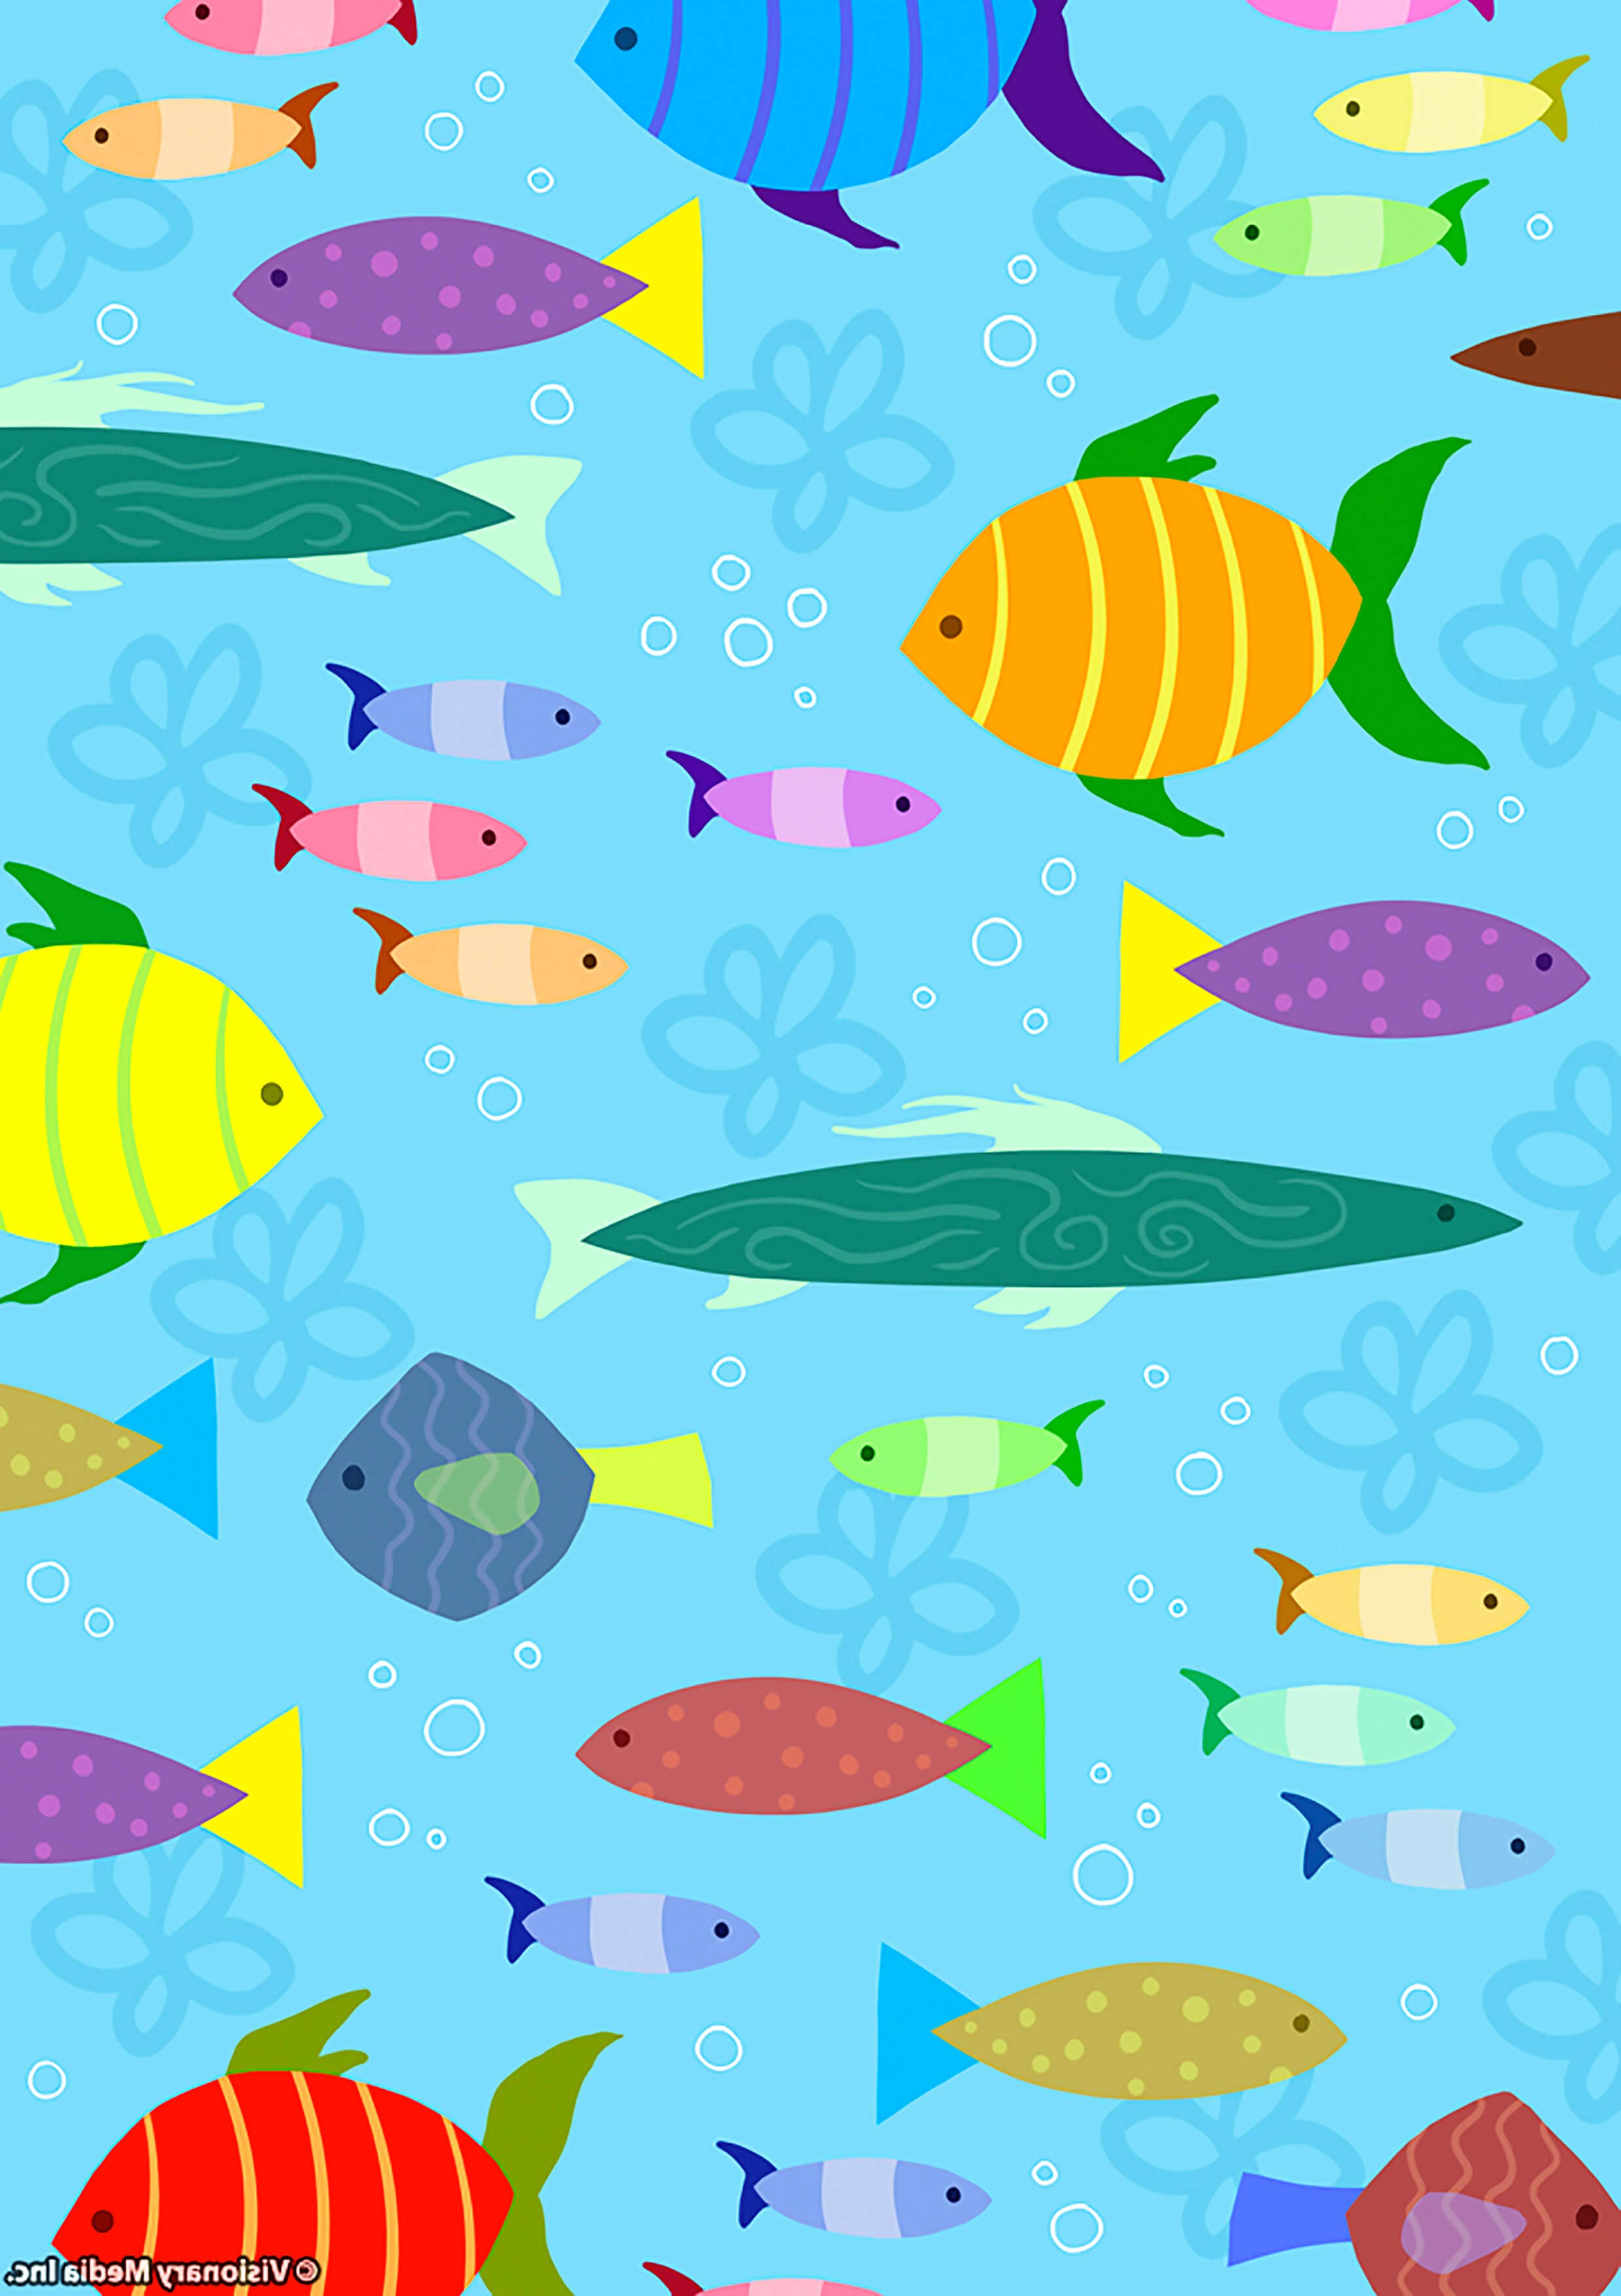 Риби картинки для дітей